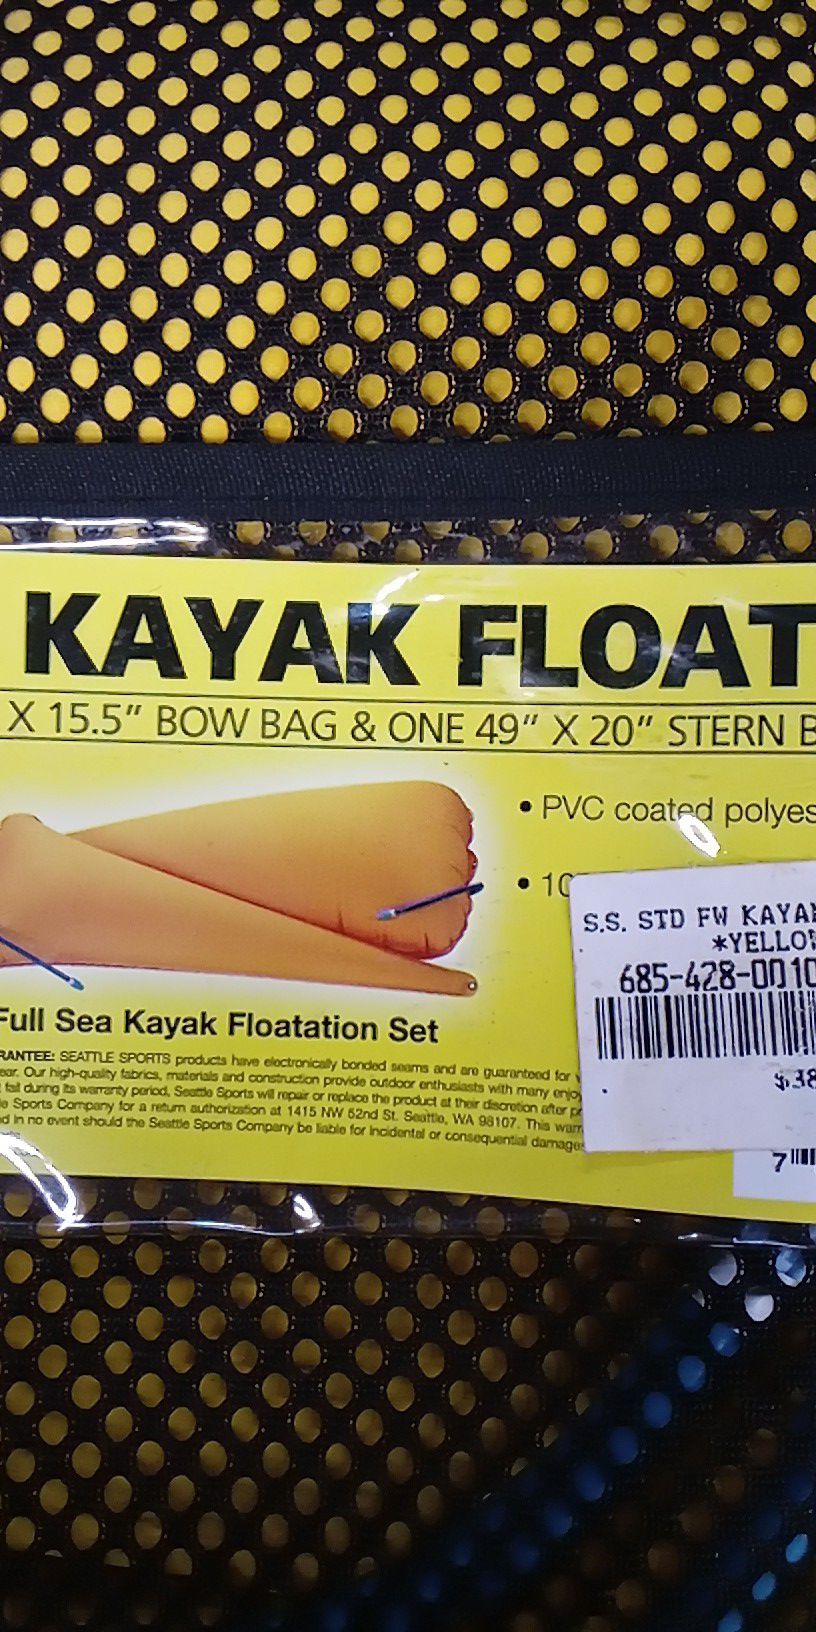 Kayak float set